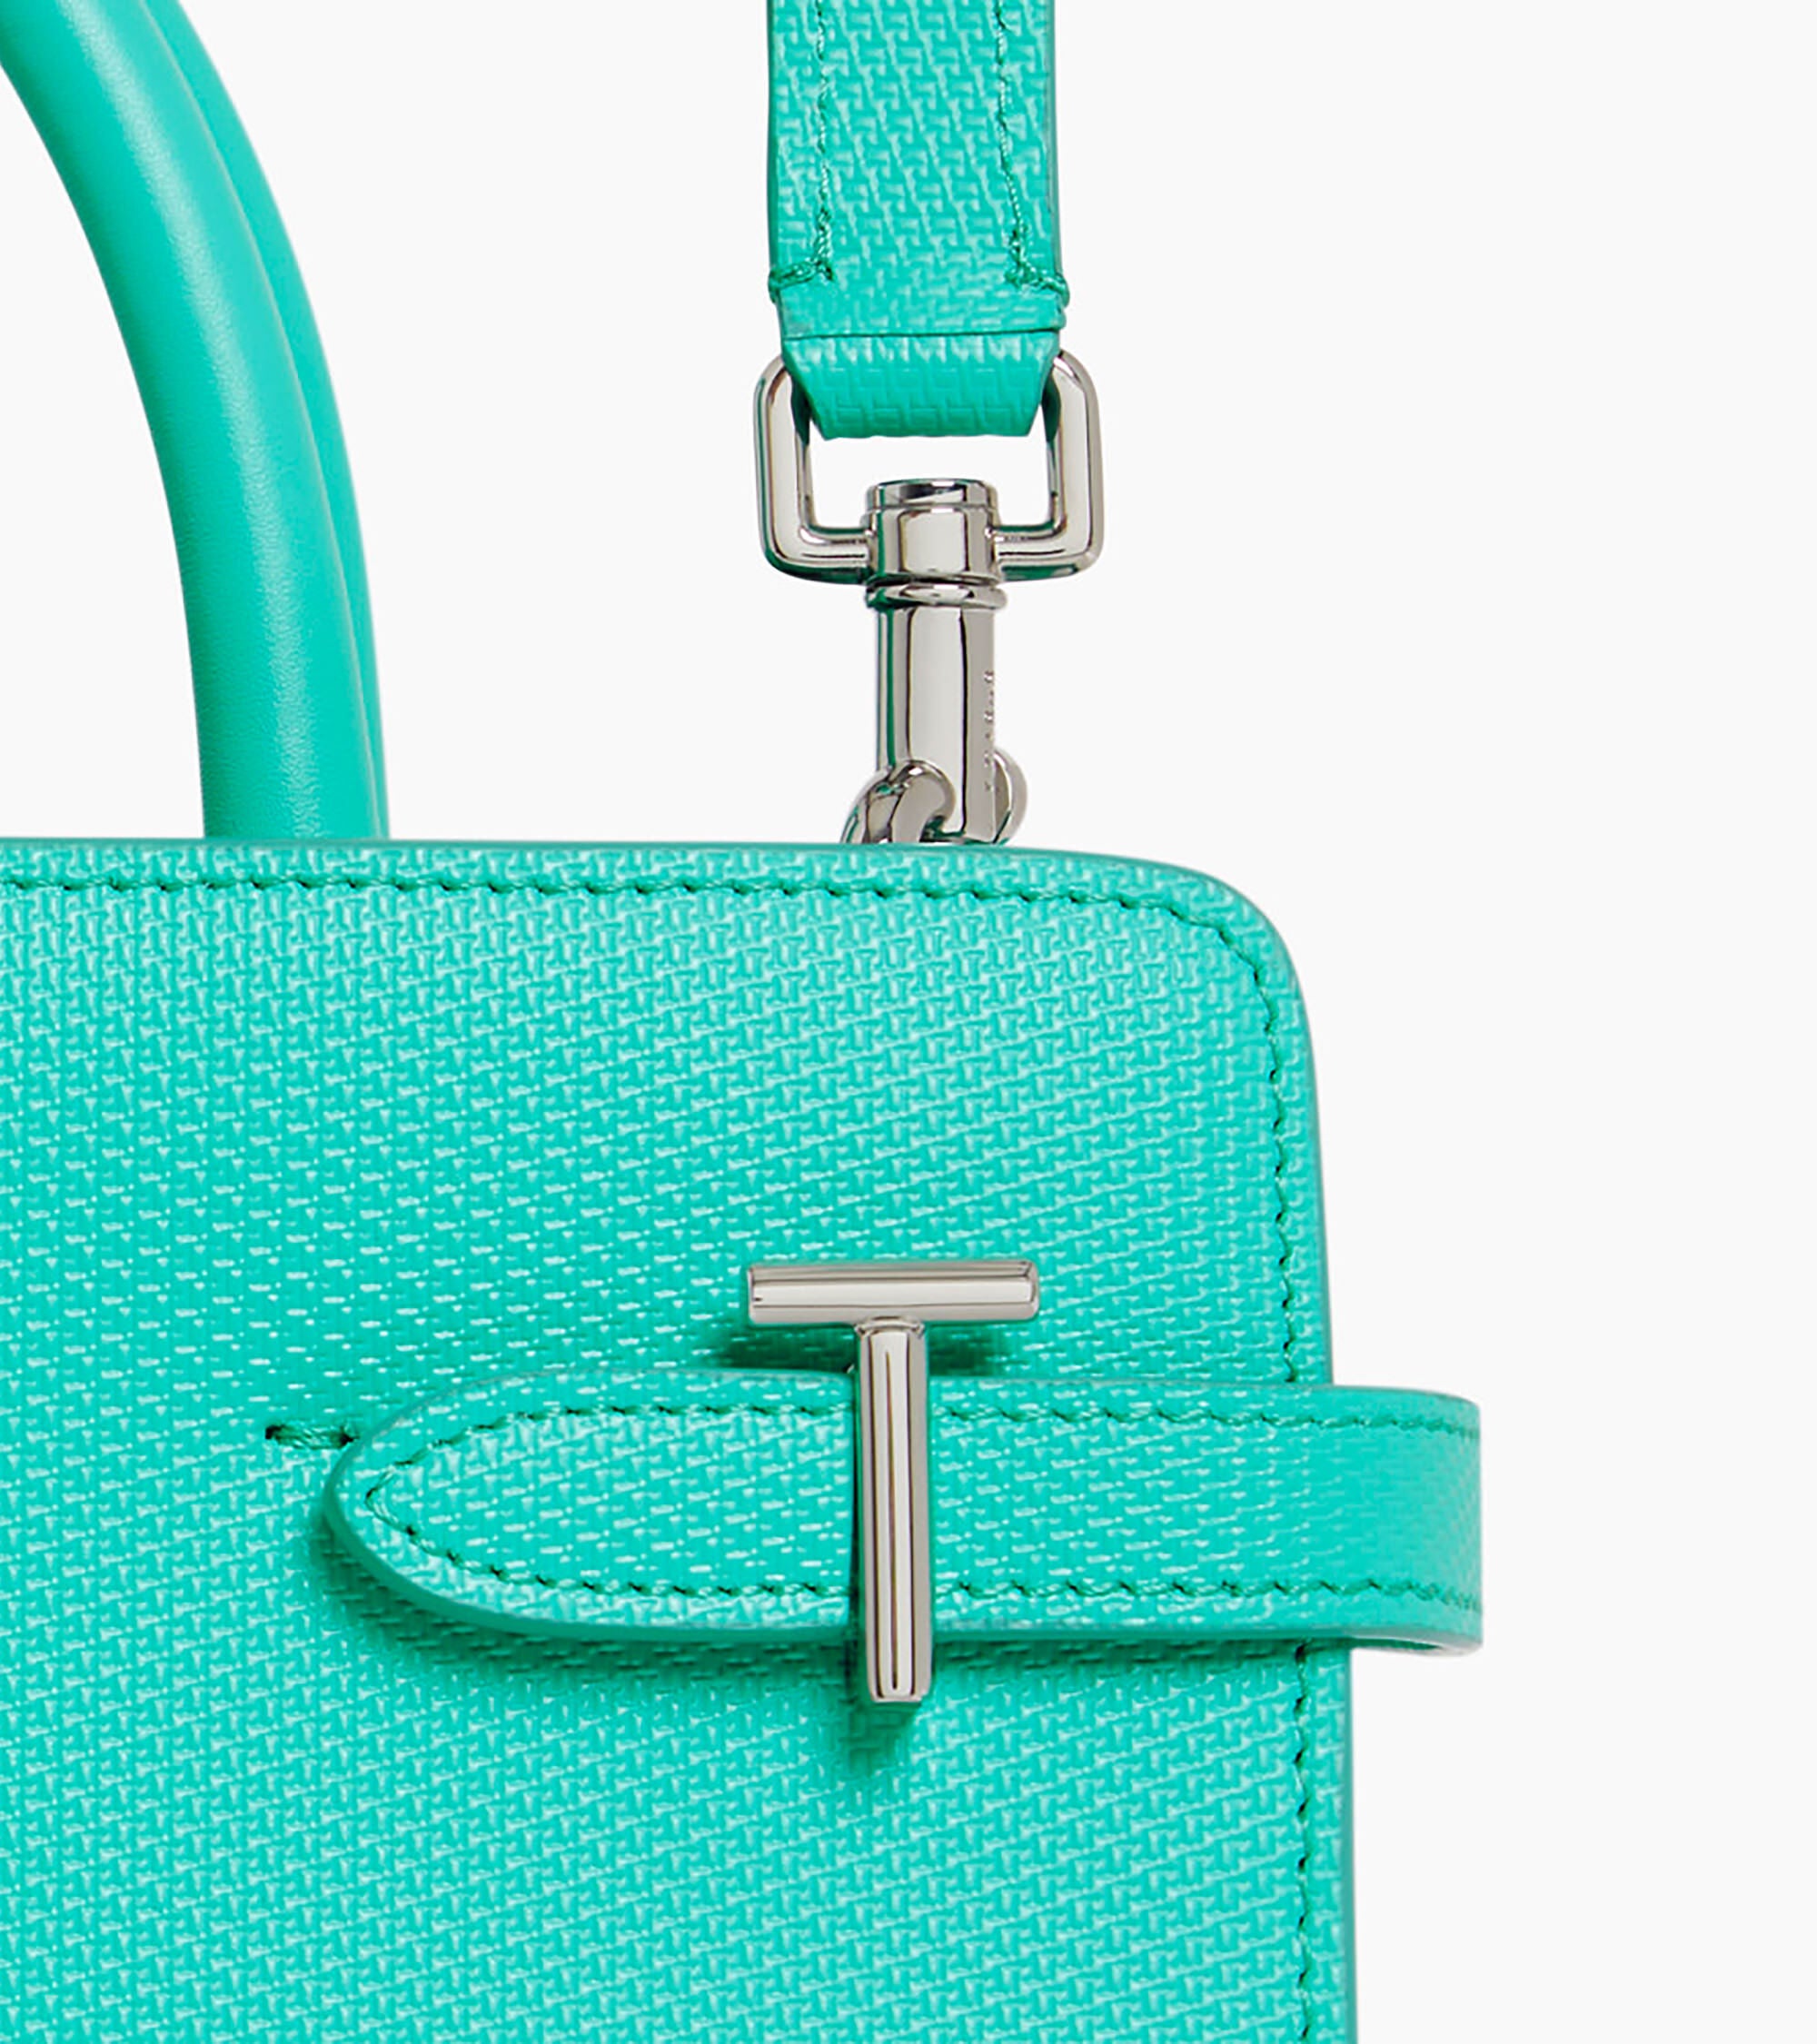 Emilie medium-sized handbag in T signature leather